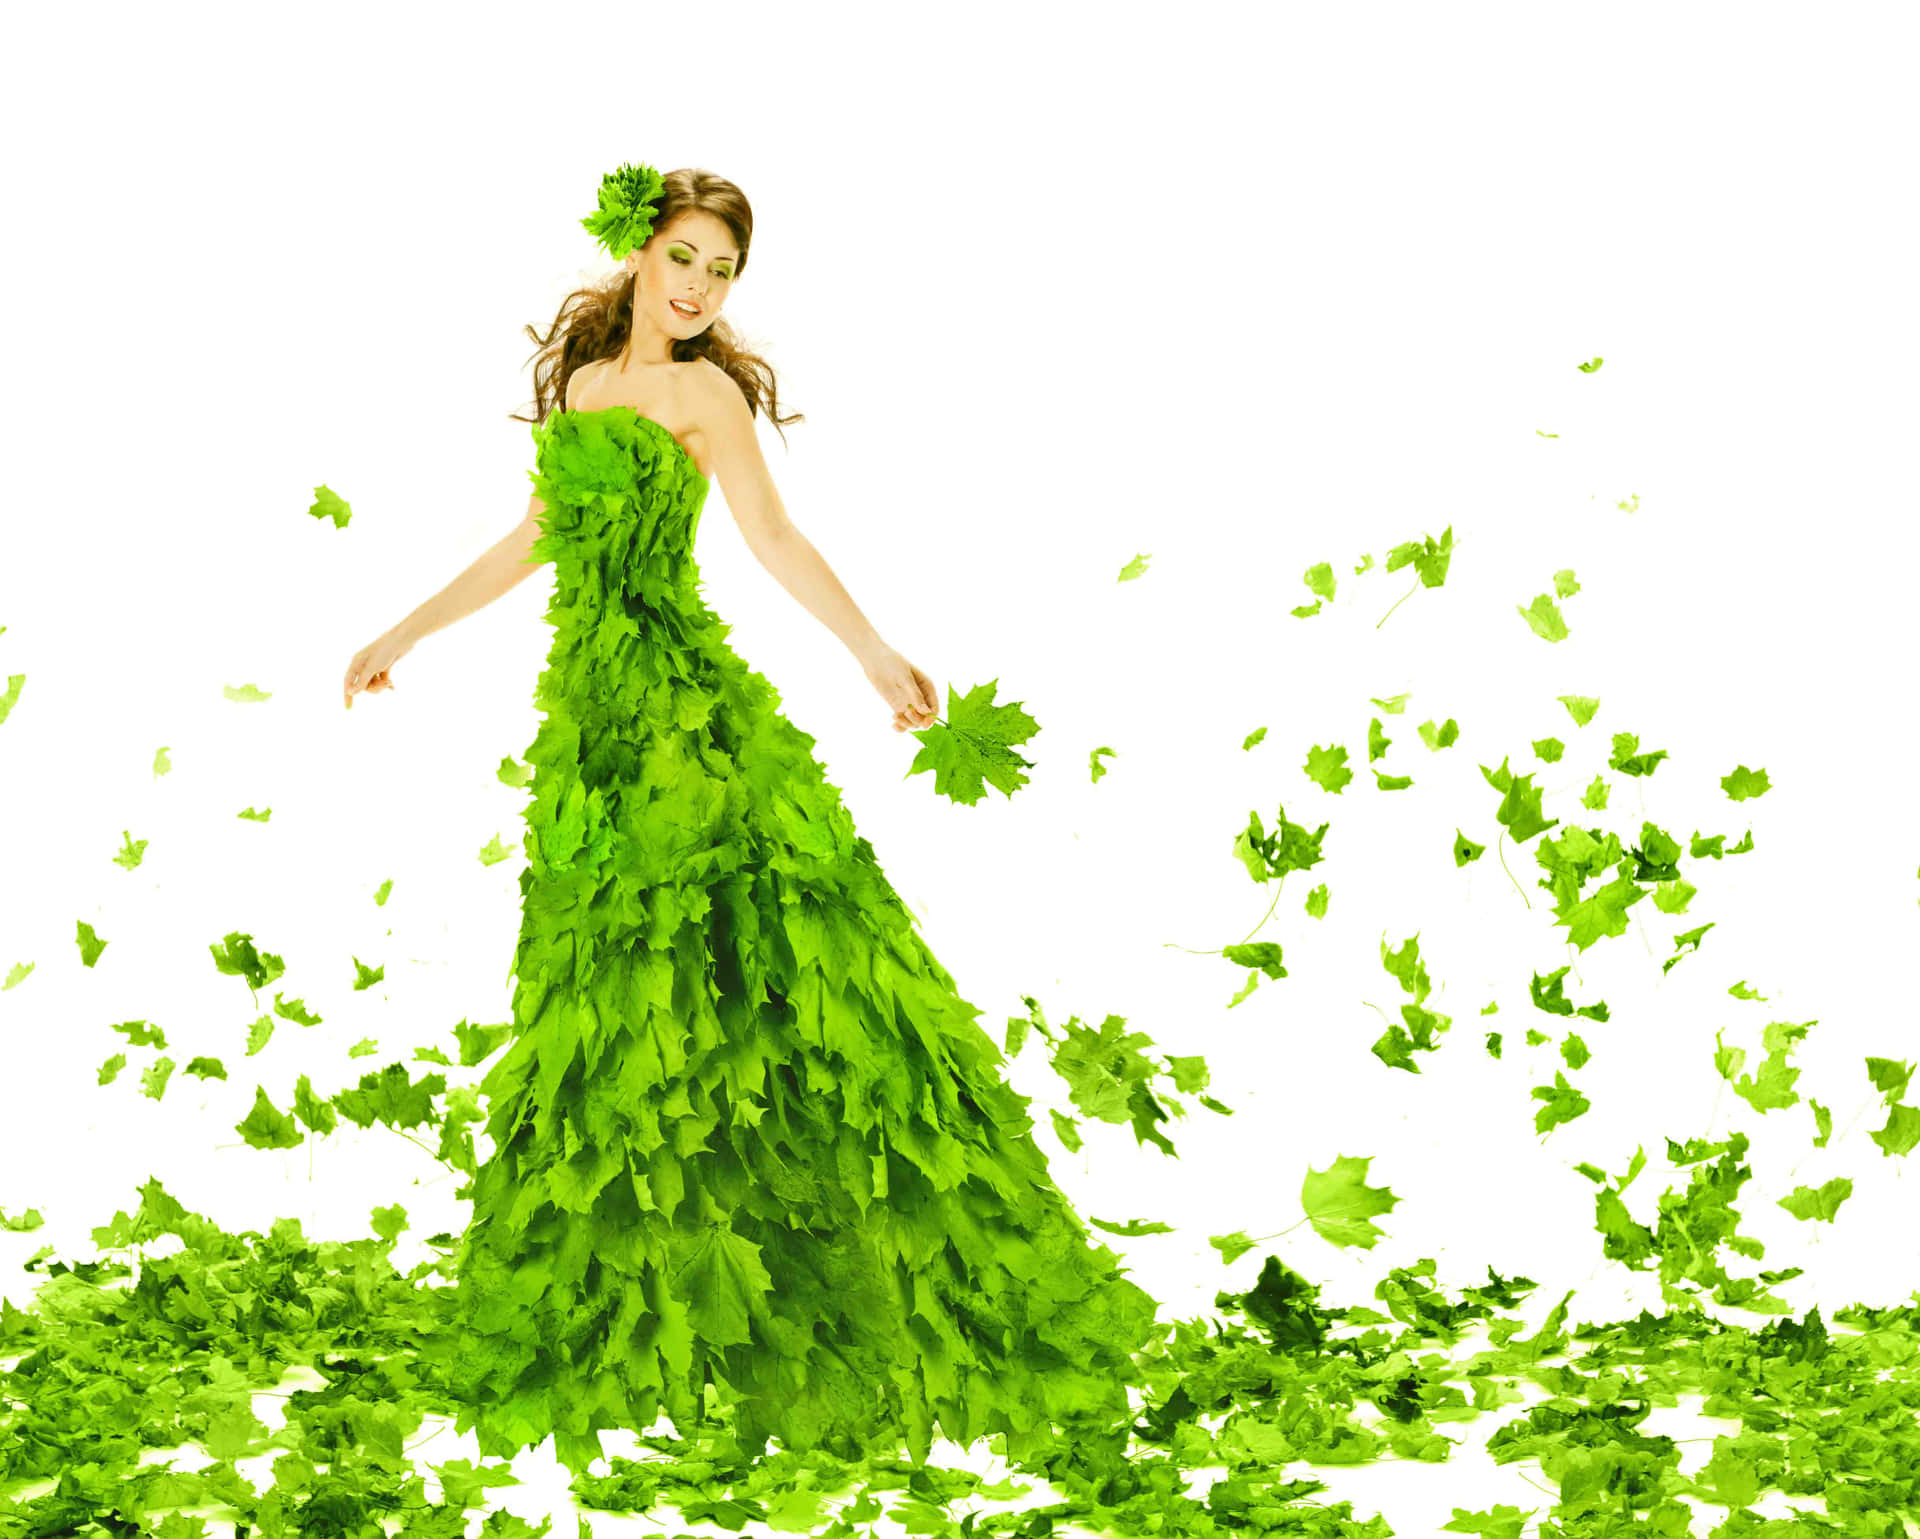 Enkvinna I En Grön Klänning